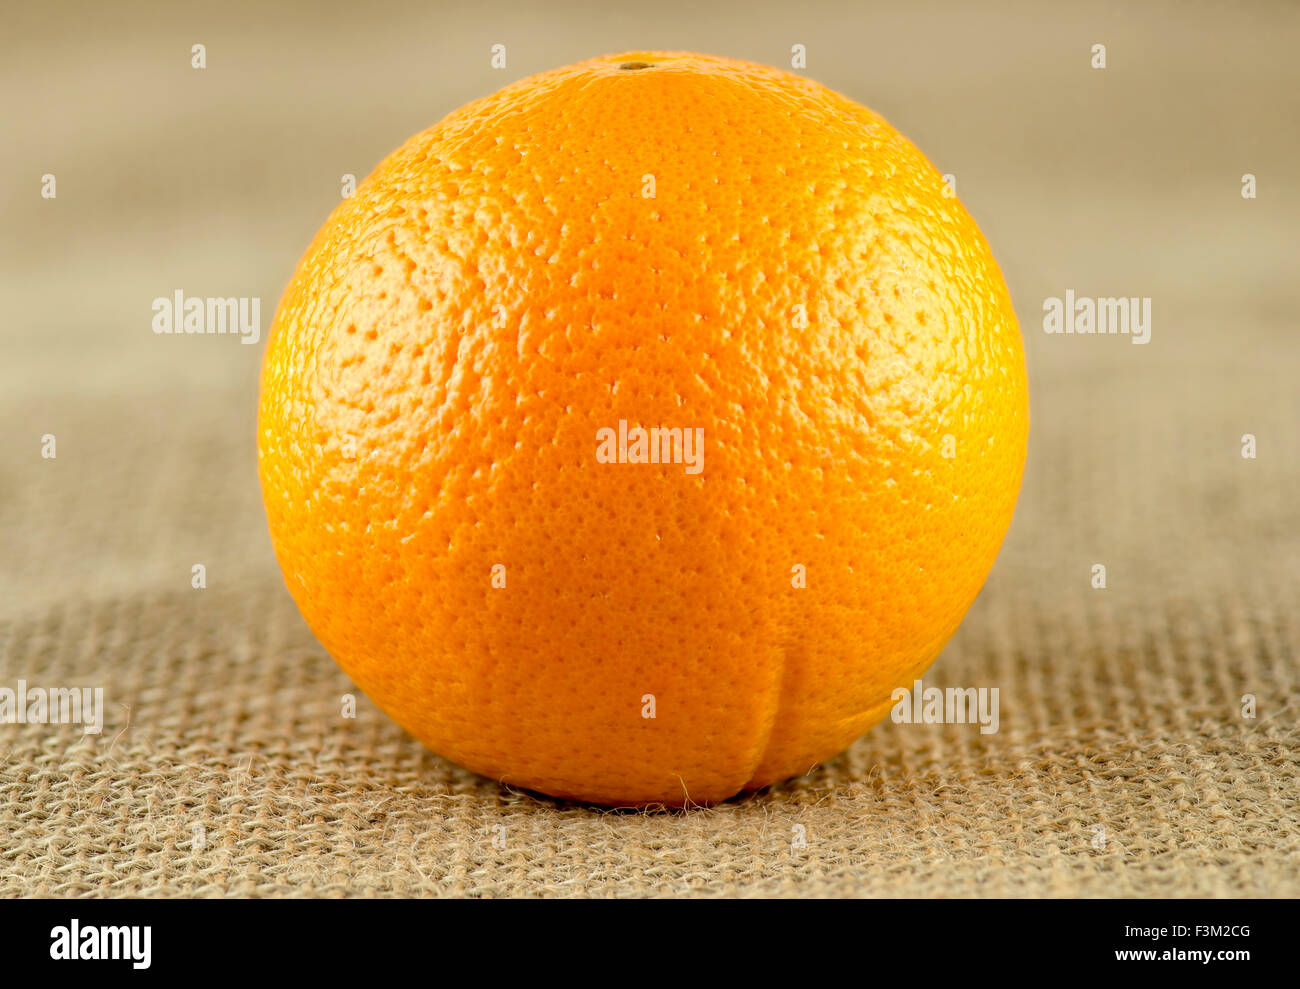 Gros plan macro de mûres bio orange sur toile de jute Banque D'Images